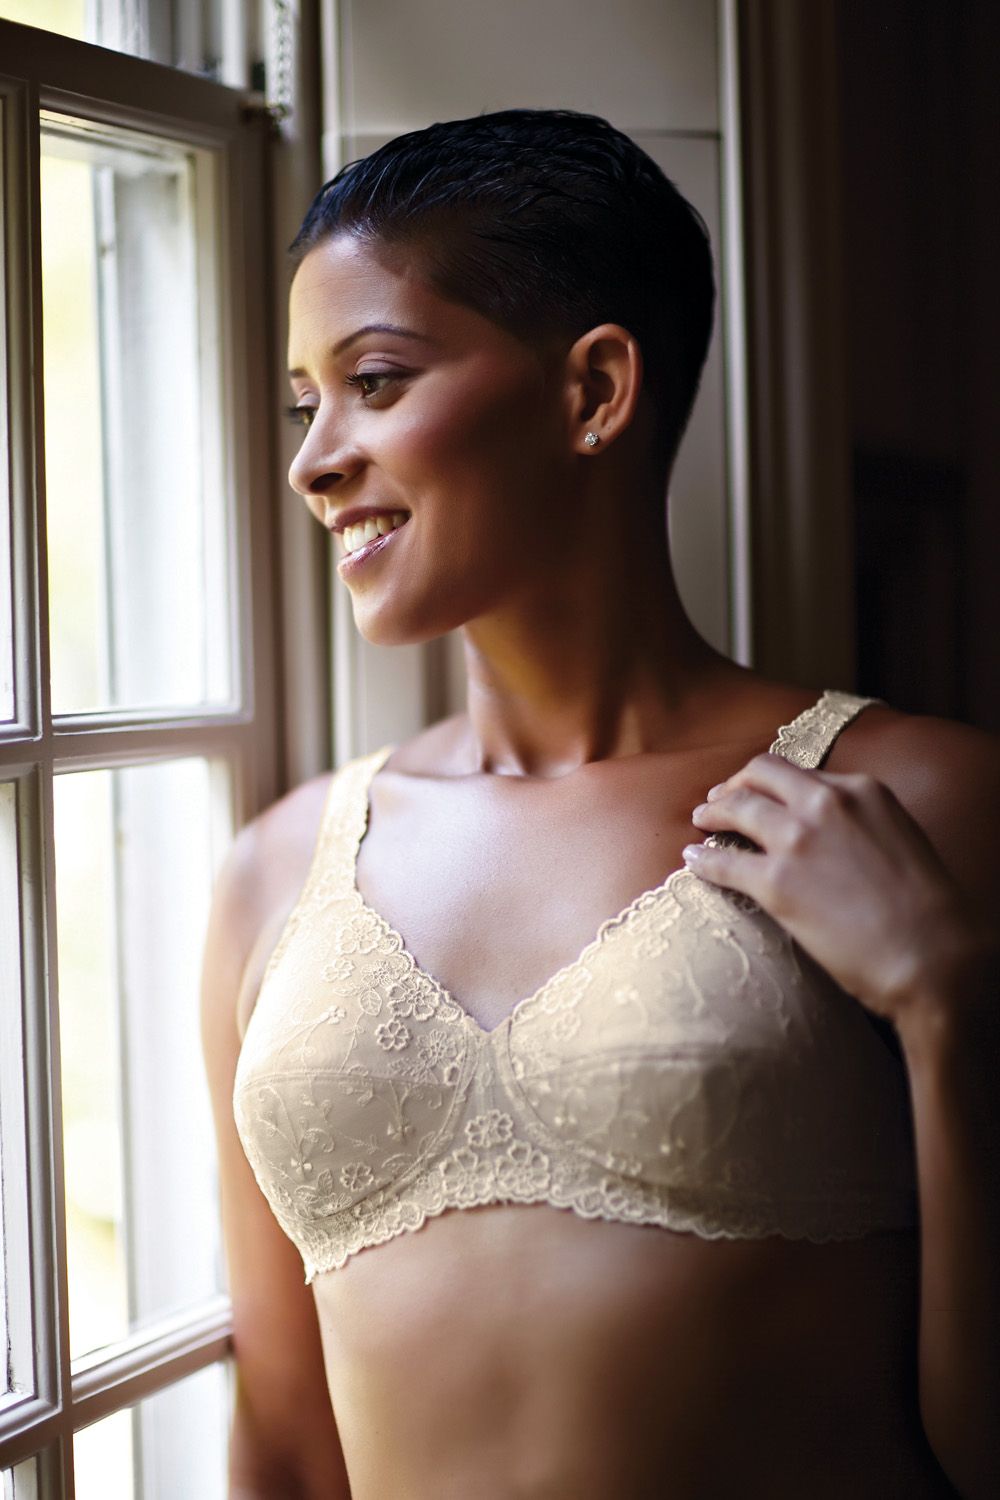 American Breast Care Dream Lace Bra - Sizes 34A to 46E and 42F